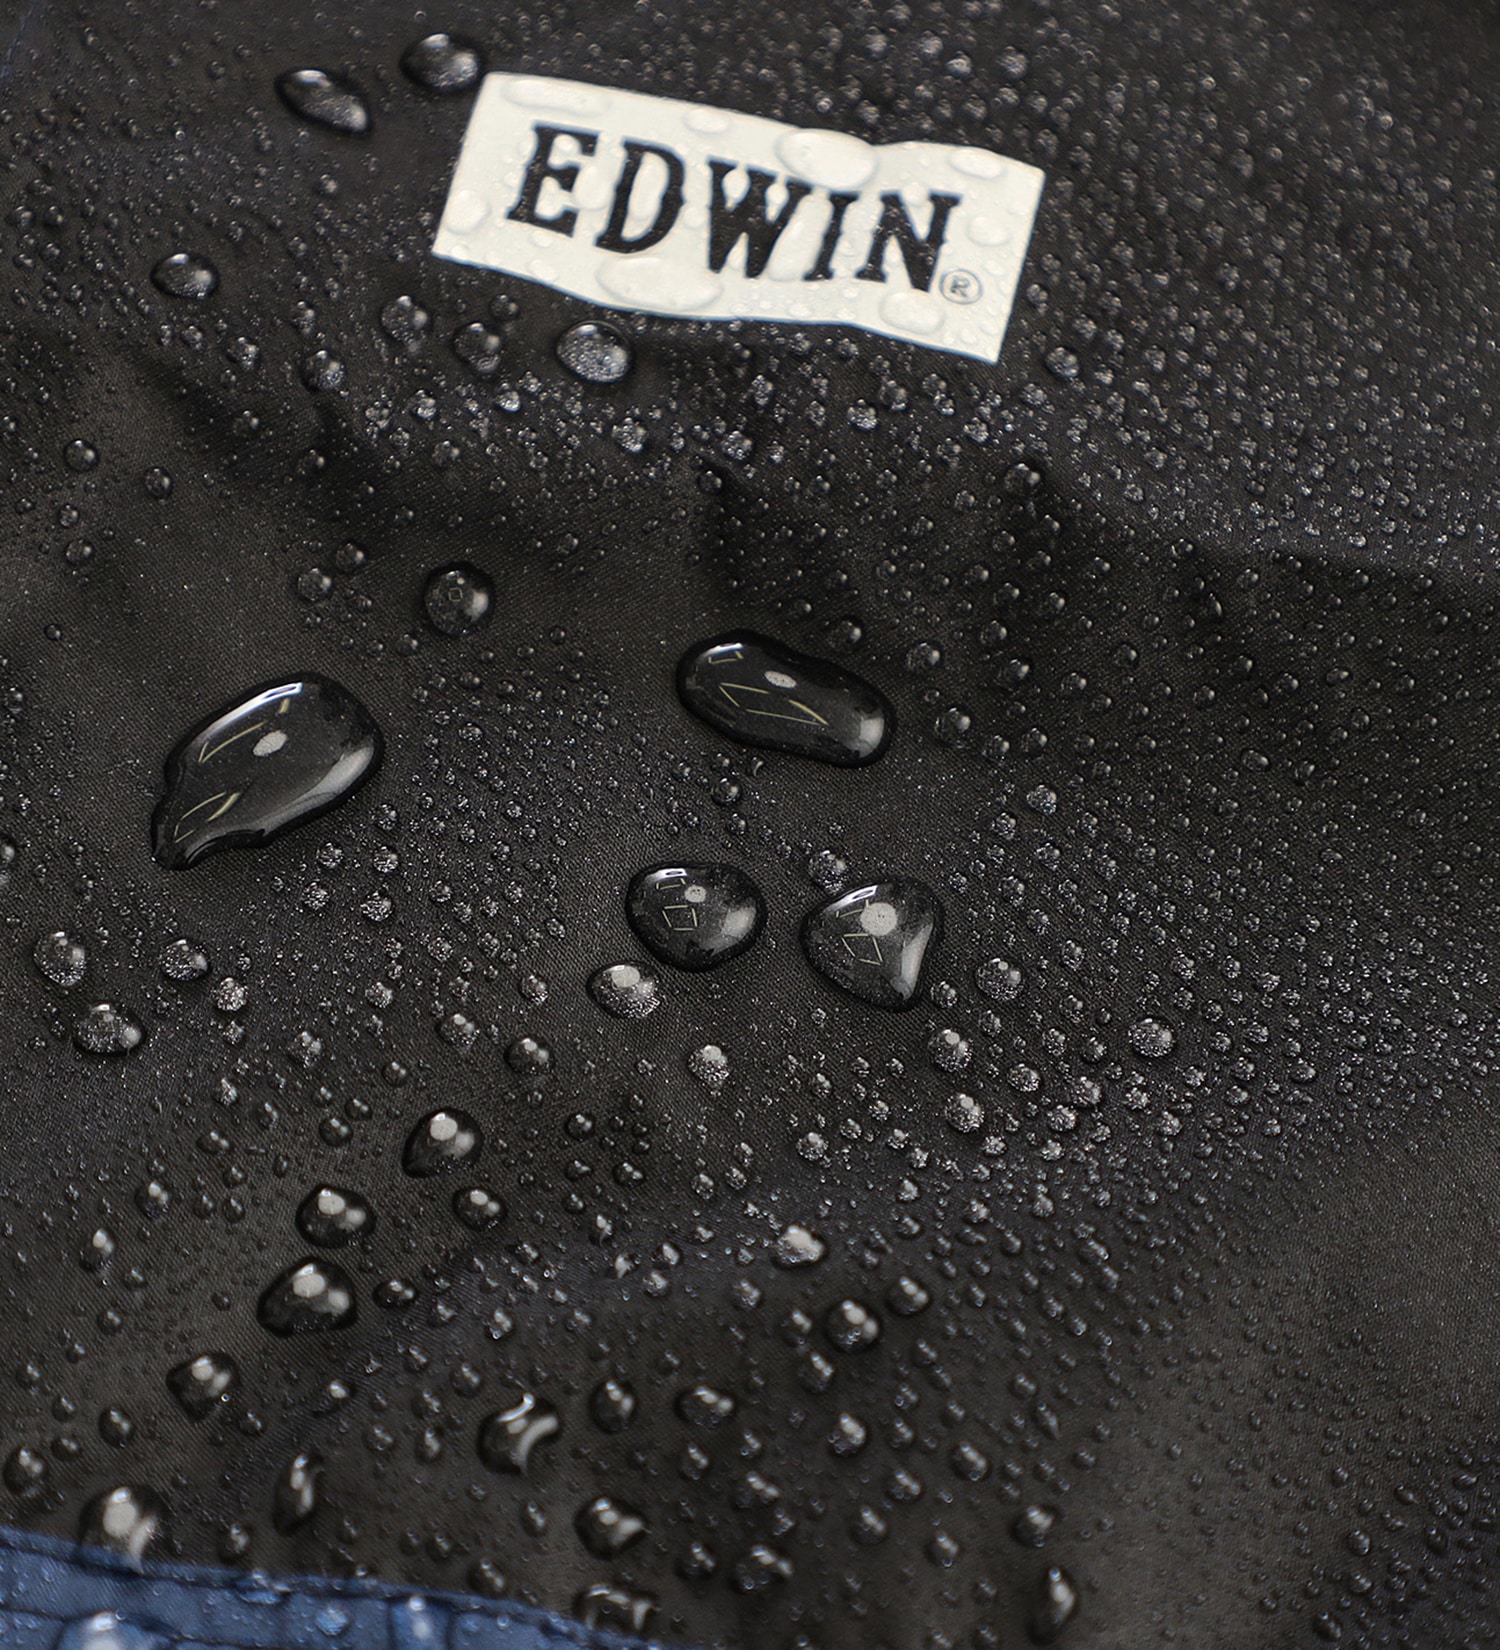 EDWIN(エドウイン)のEDWIN レインポンチョ|ファッション雑貨/レインウェア/ポンチョ/メンズ|ネイビー